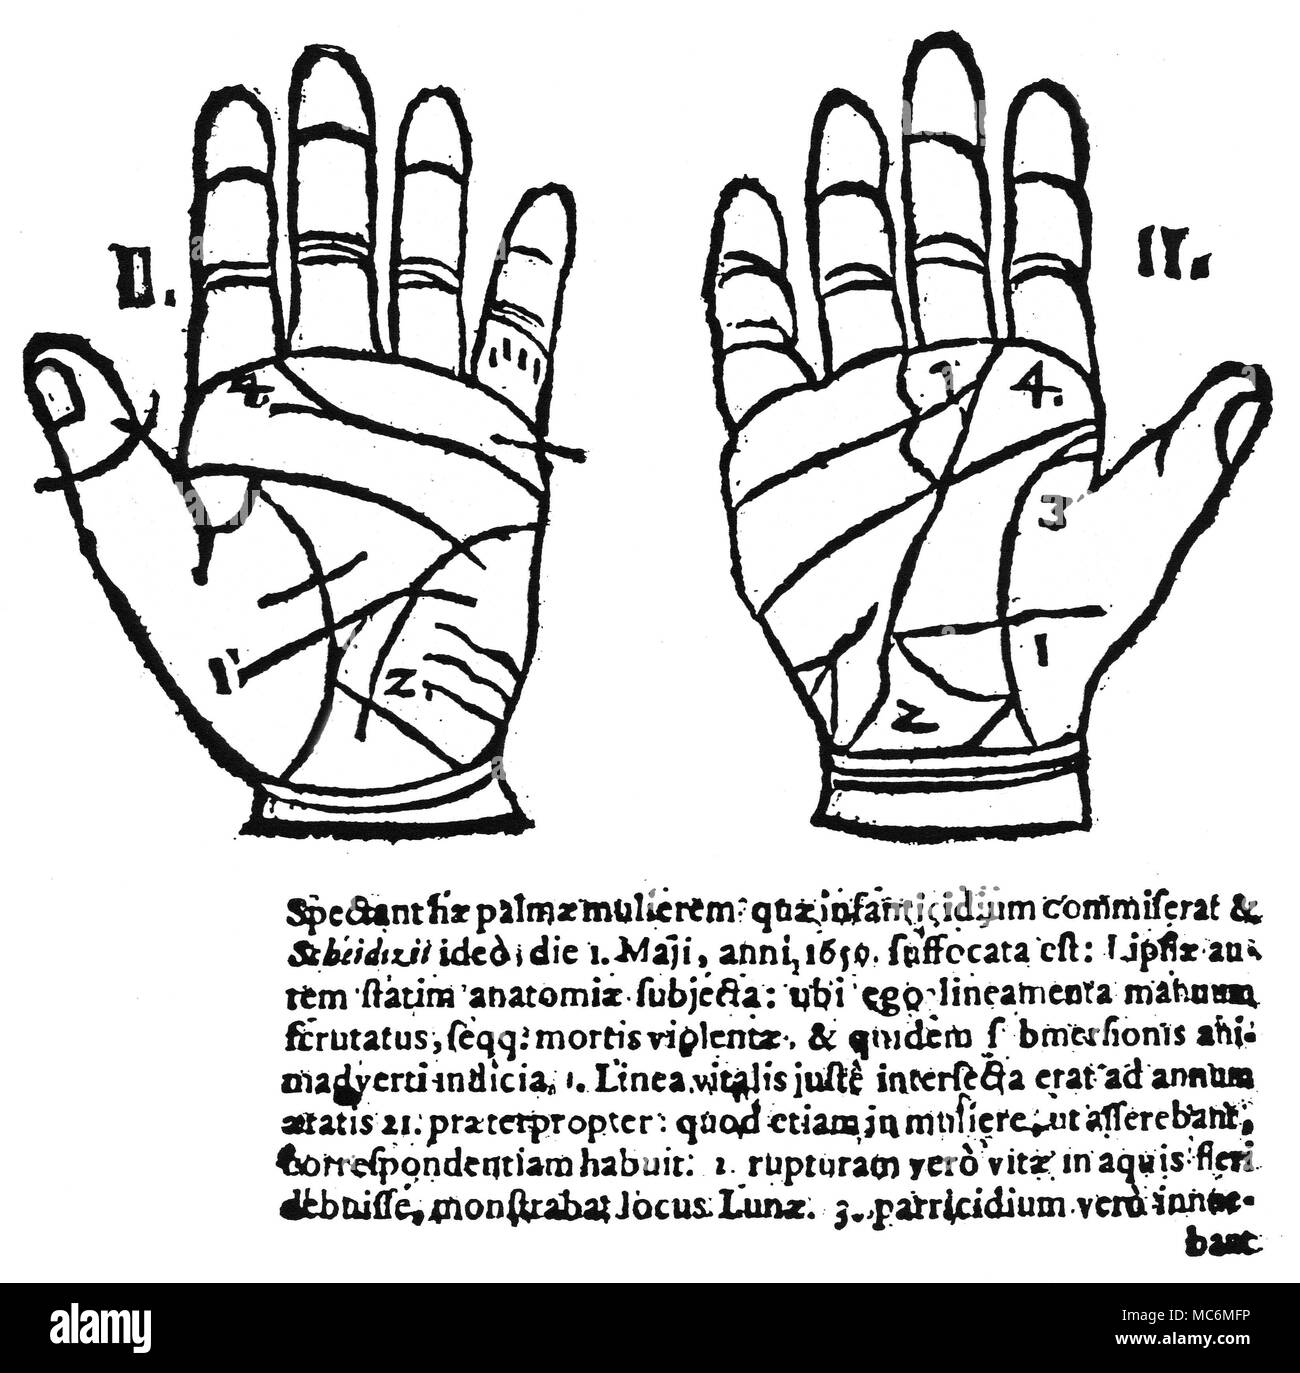 Chiromanzia - CHIROMANZIA medievale a due mani-diagrammi, da Praetorius, Ludicrum Chiromanticum, 1661. Le due mani si riferiscono a una donna che ha ucciso i suoi bambini. Foto Stock